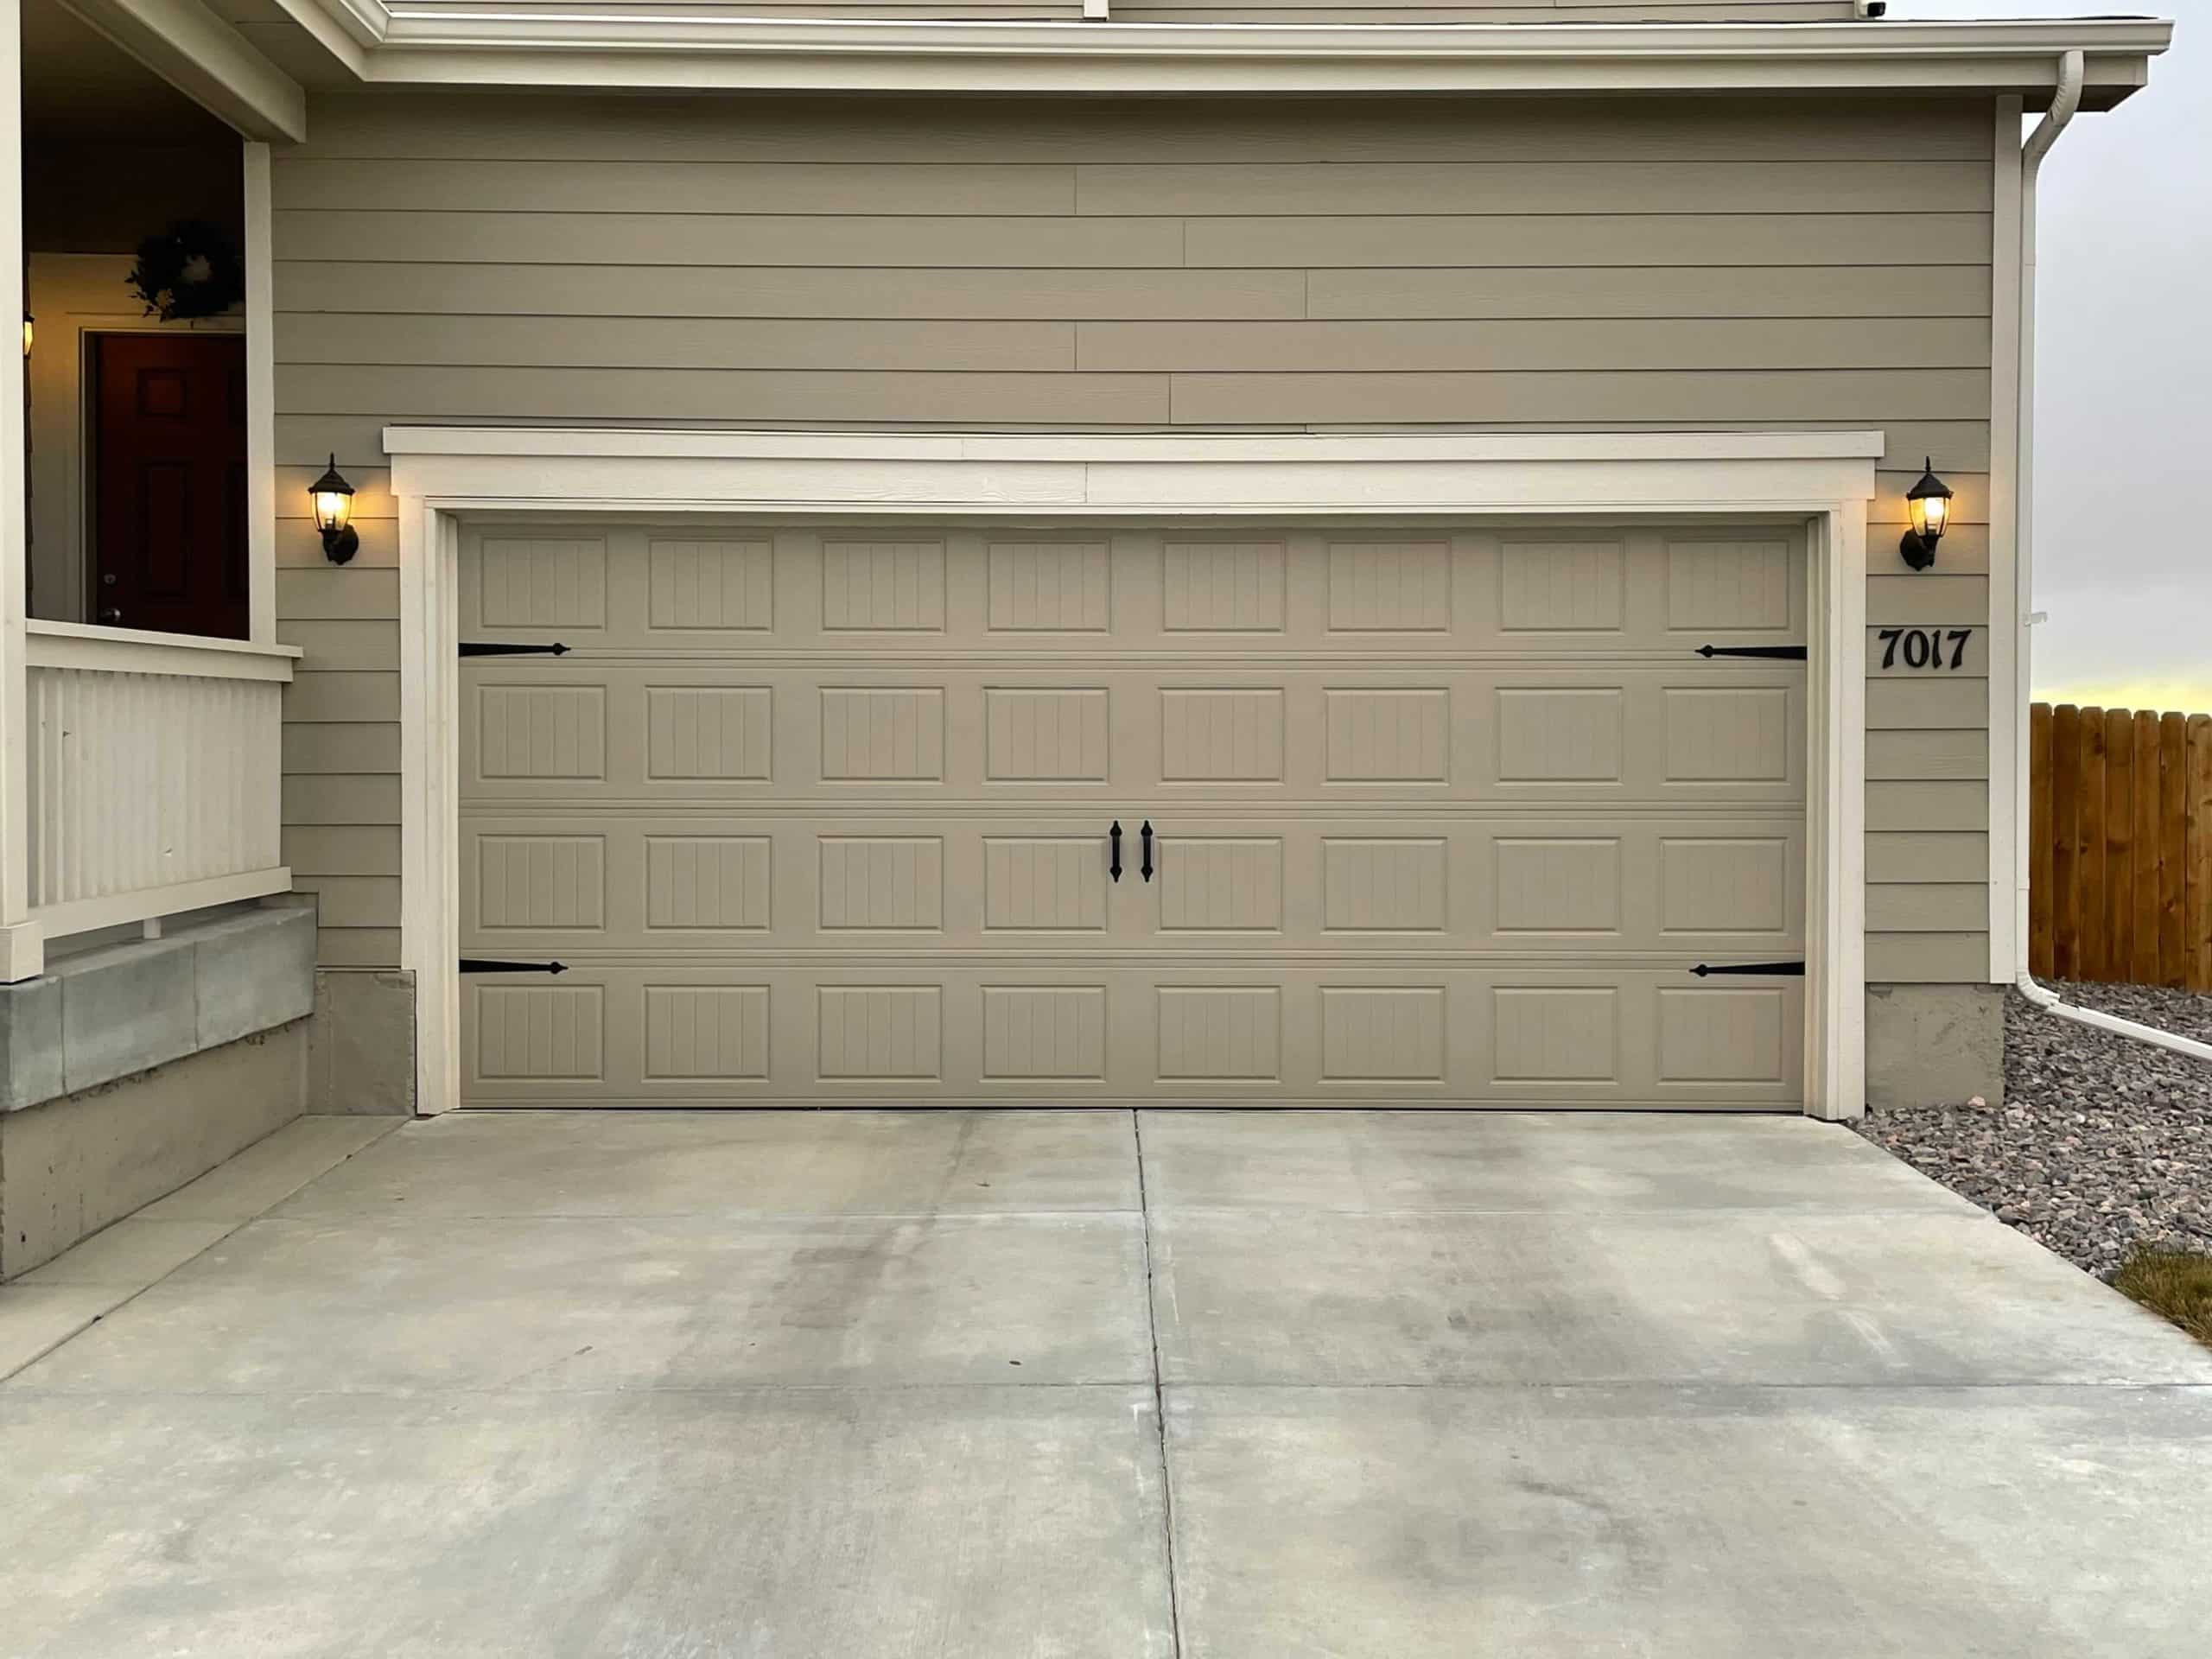 a newly installed garage door